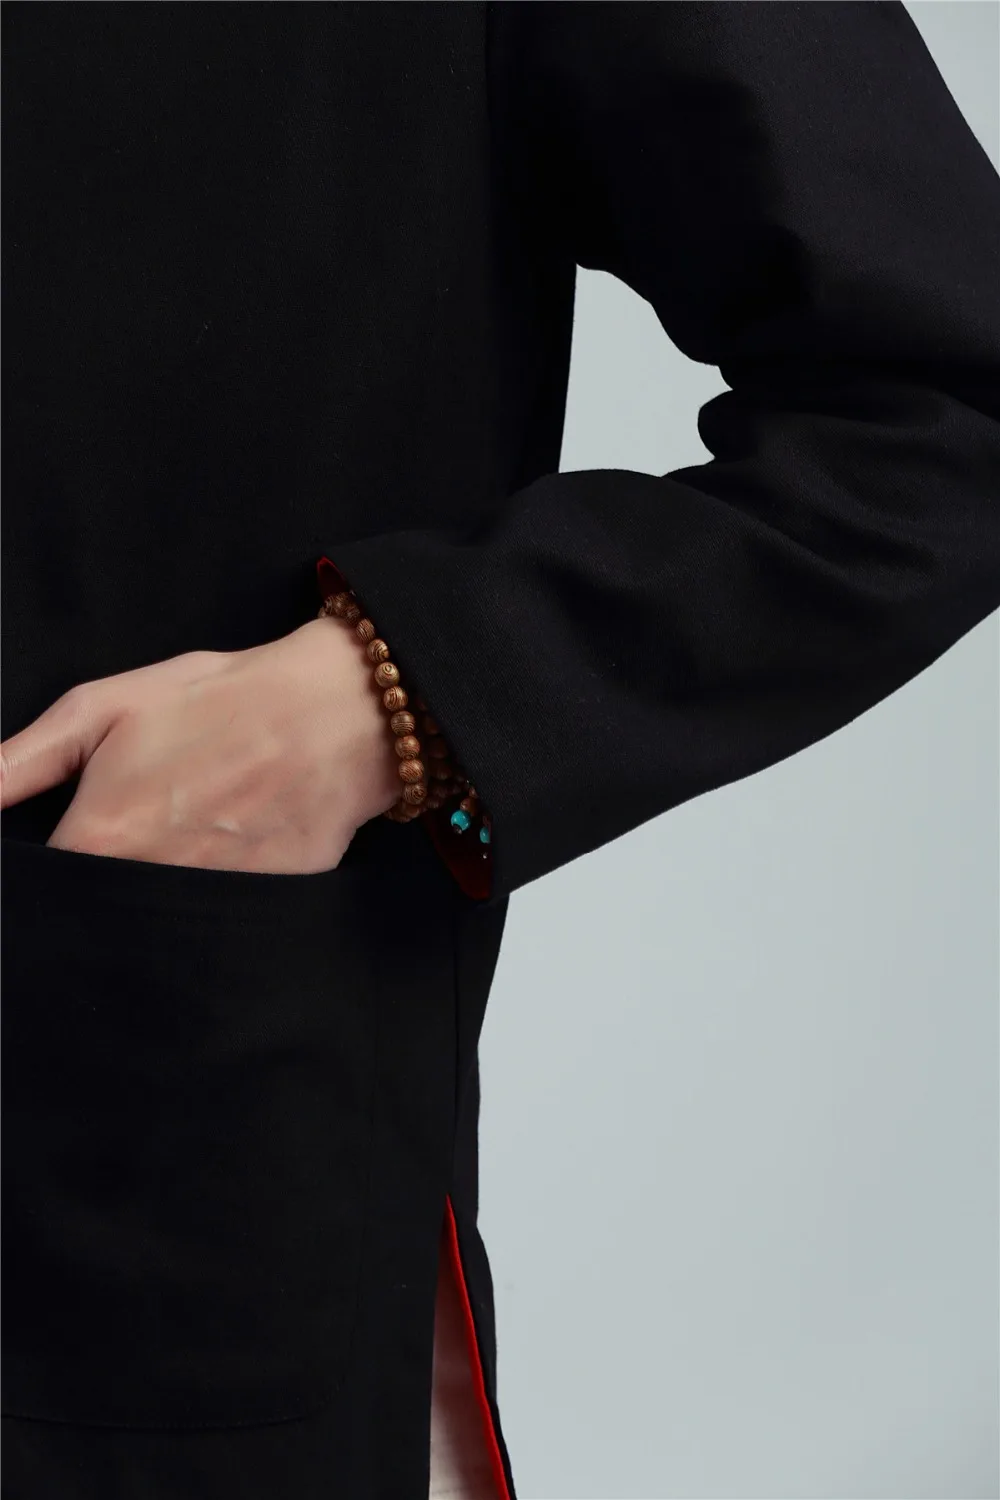 Шанхай история китайский топ revisiable Китайская традиционная одежда Двусторонняя одежда воротник-стойка белье китайский кунг-фу куртка